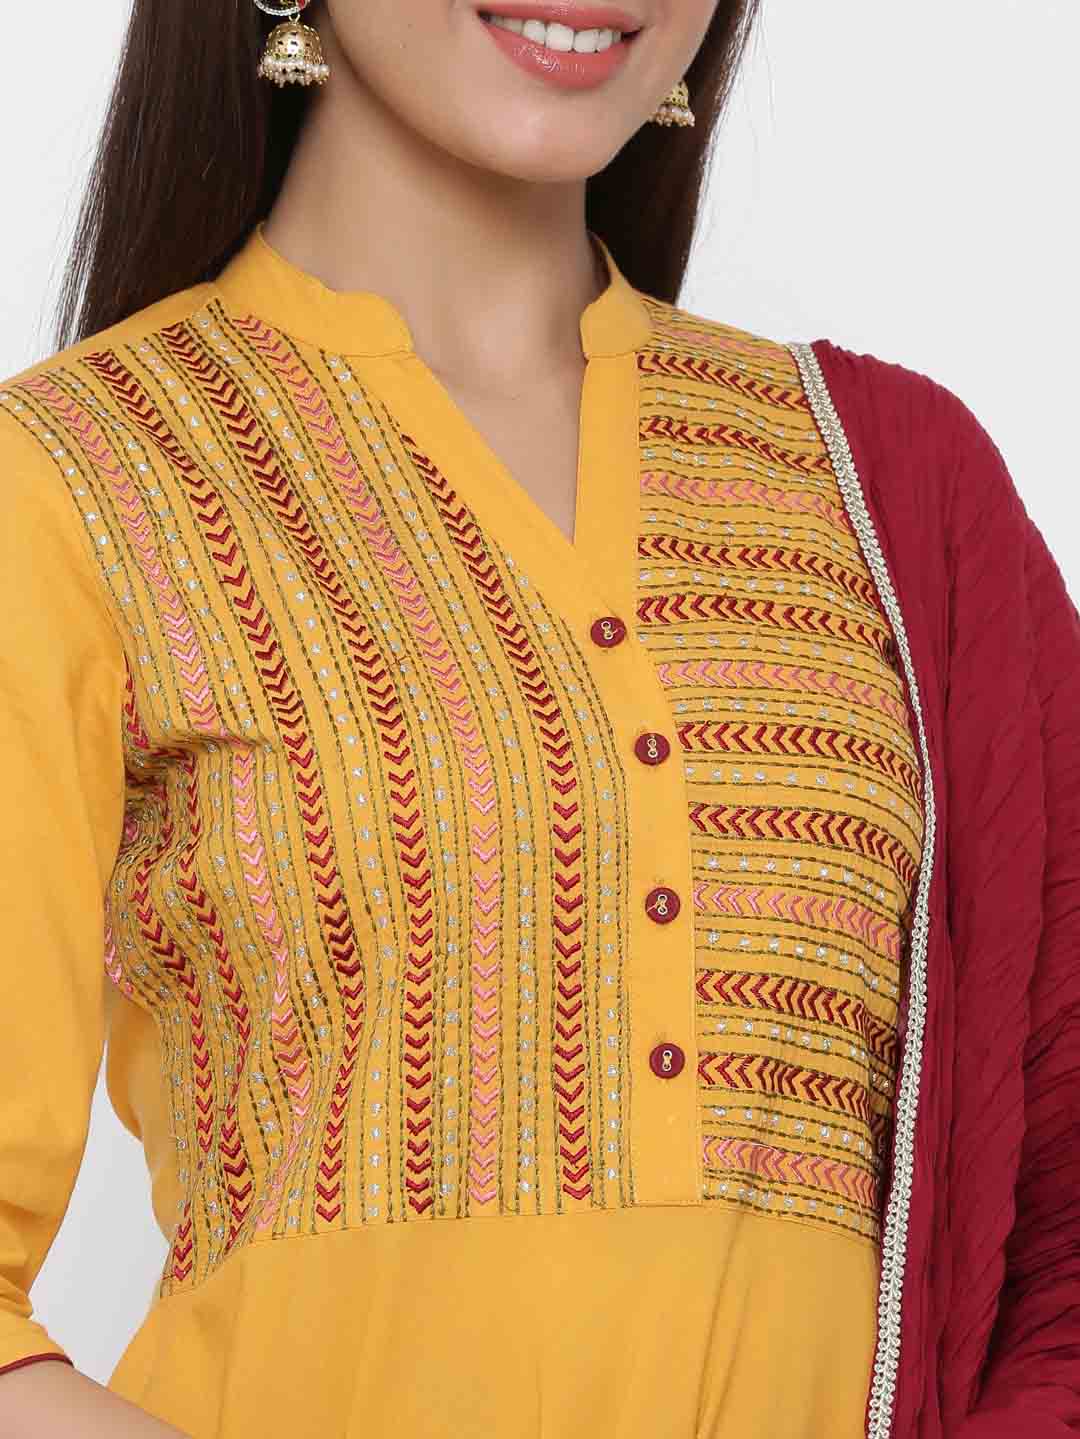 Cotton Jaipuri Kurti Pant Set at Rs.600/Piece in jaipur offer by Trisha  Industries